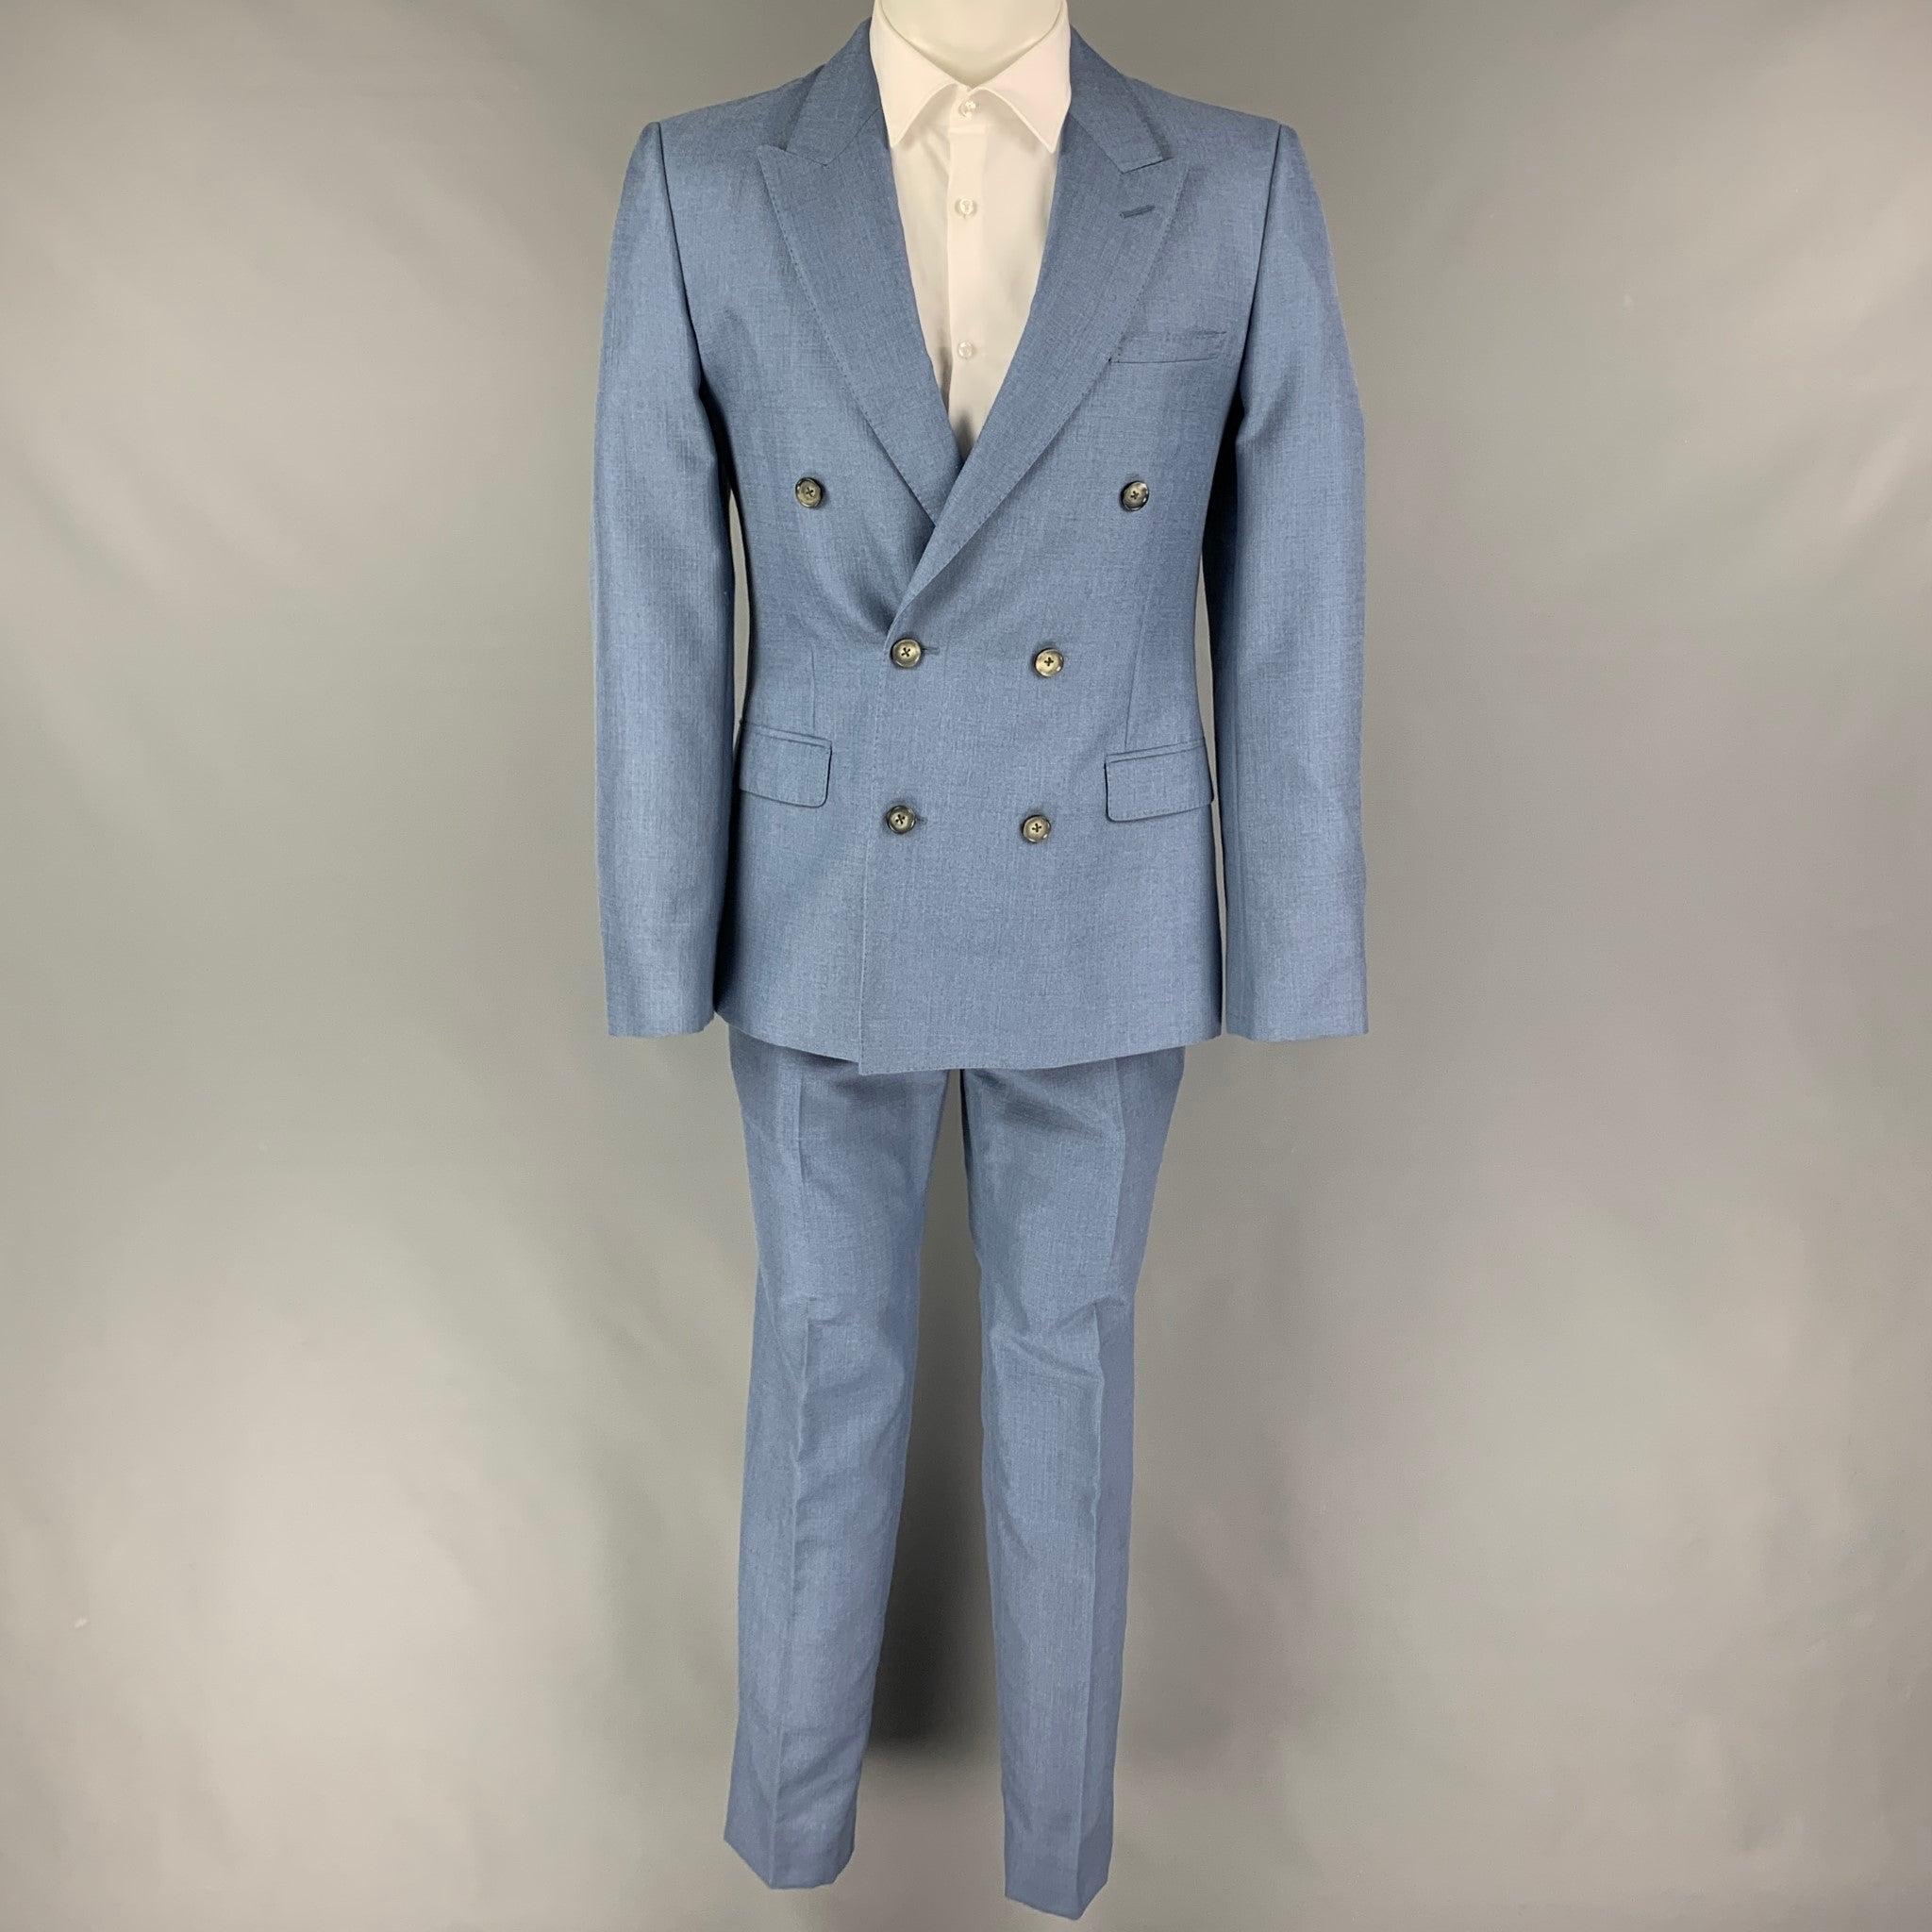 ALEXANDER McQUEEN
Le costume est en mohair/soie bleu avec une doublure complète et comprend un manteau de sport à double boutonnage avec un revers en pointe et un pantalon assorti à devant plat. Fabriquées en Italie. Excellent état d'origine.